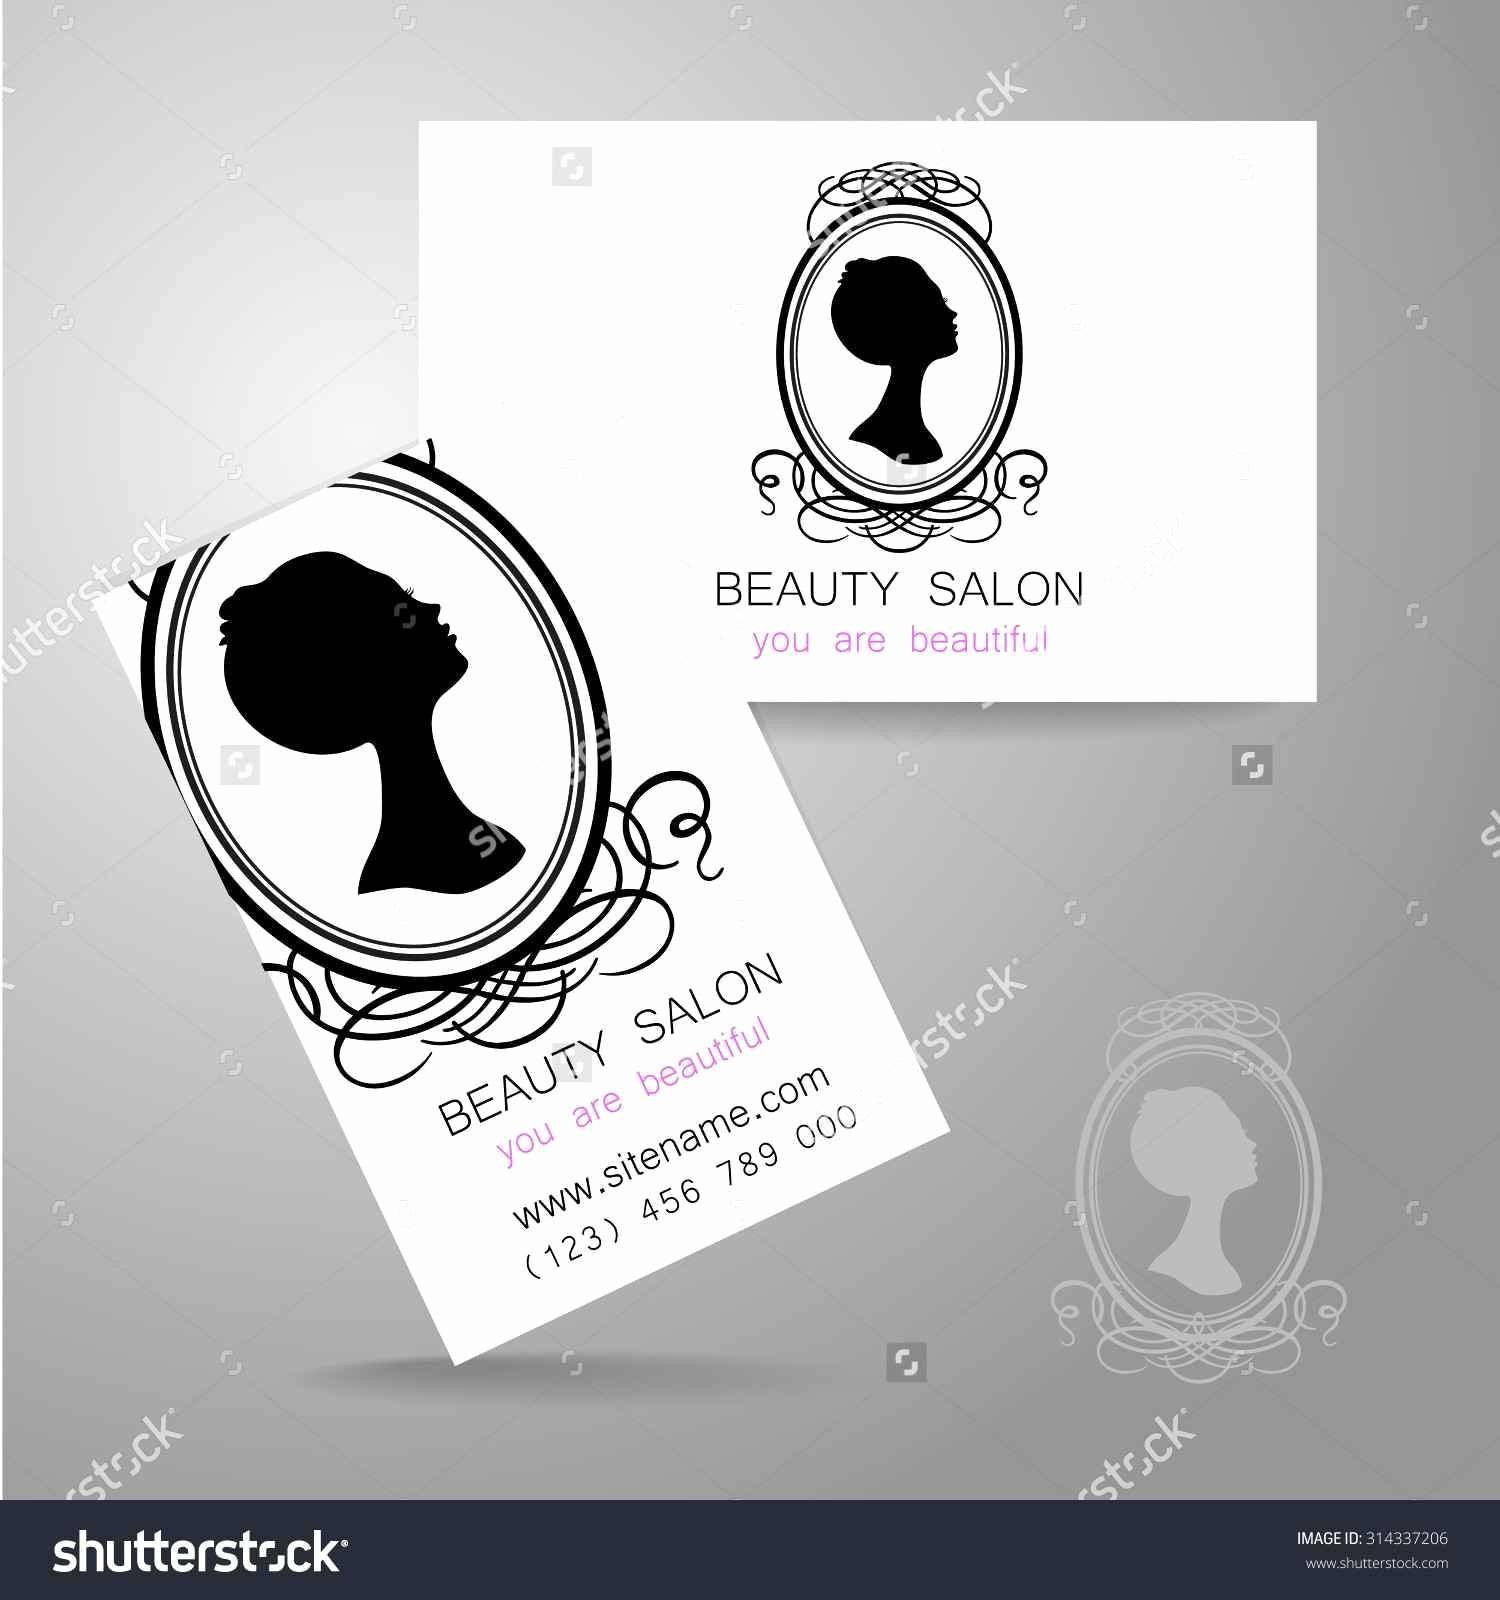 Hair Stylist Business Ideas Salon Templates Card Design Of Salon Business Card Templates